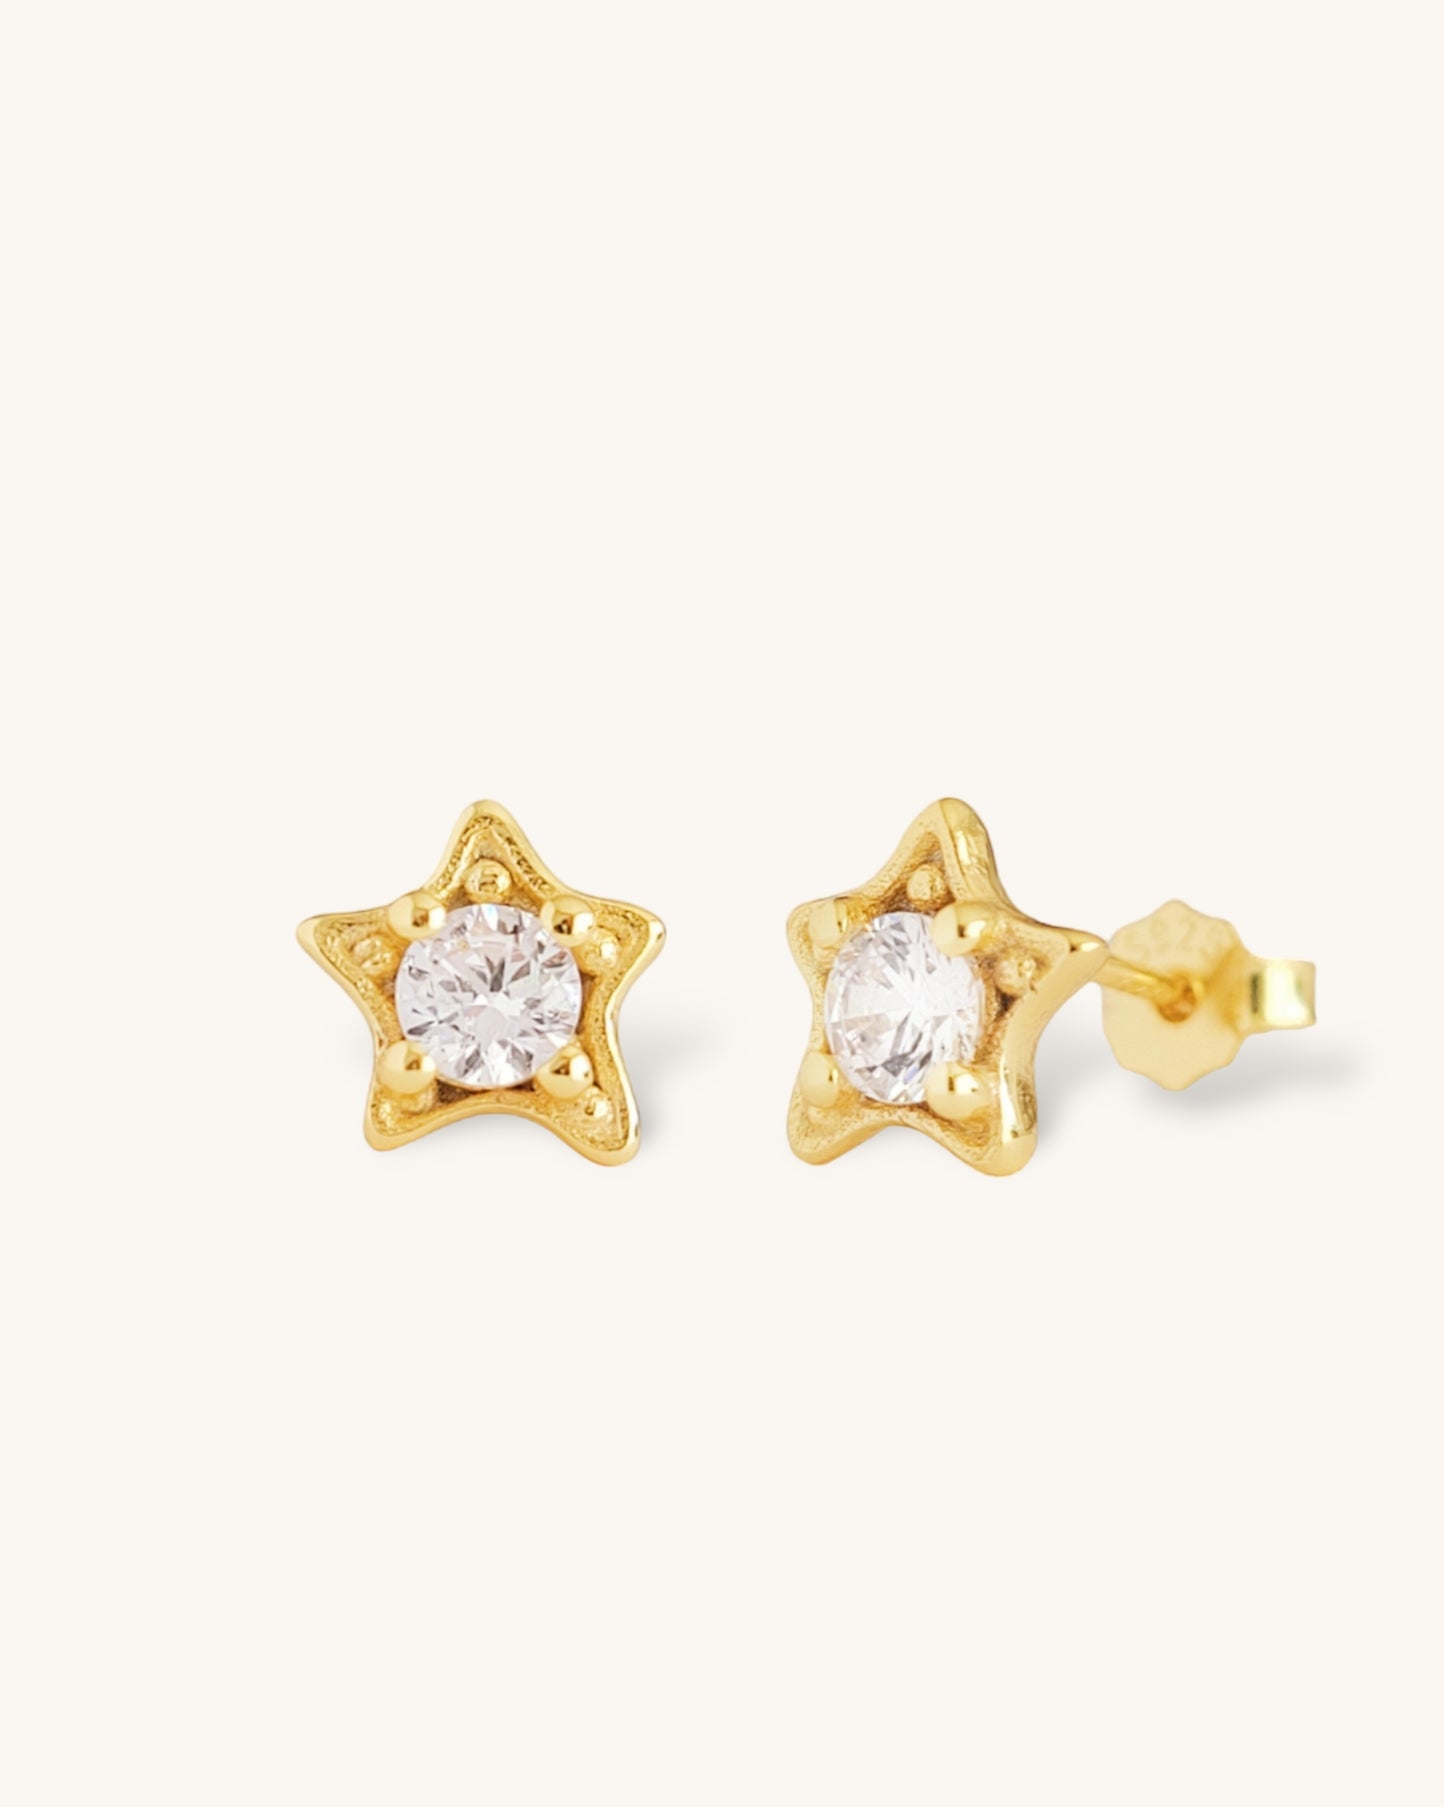 Crystal Star earrings